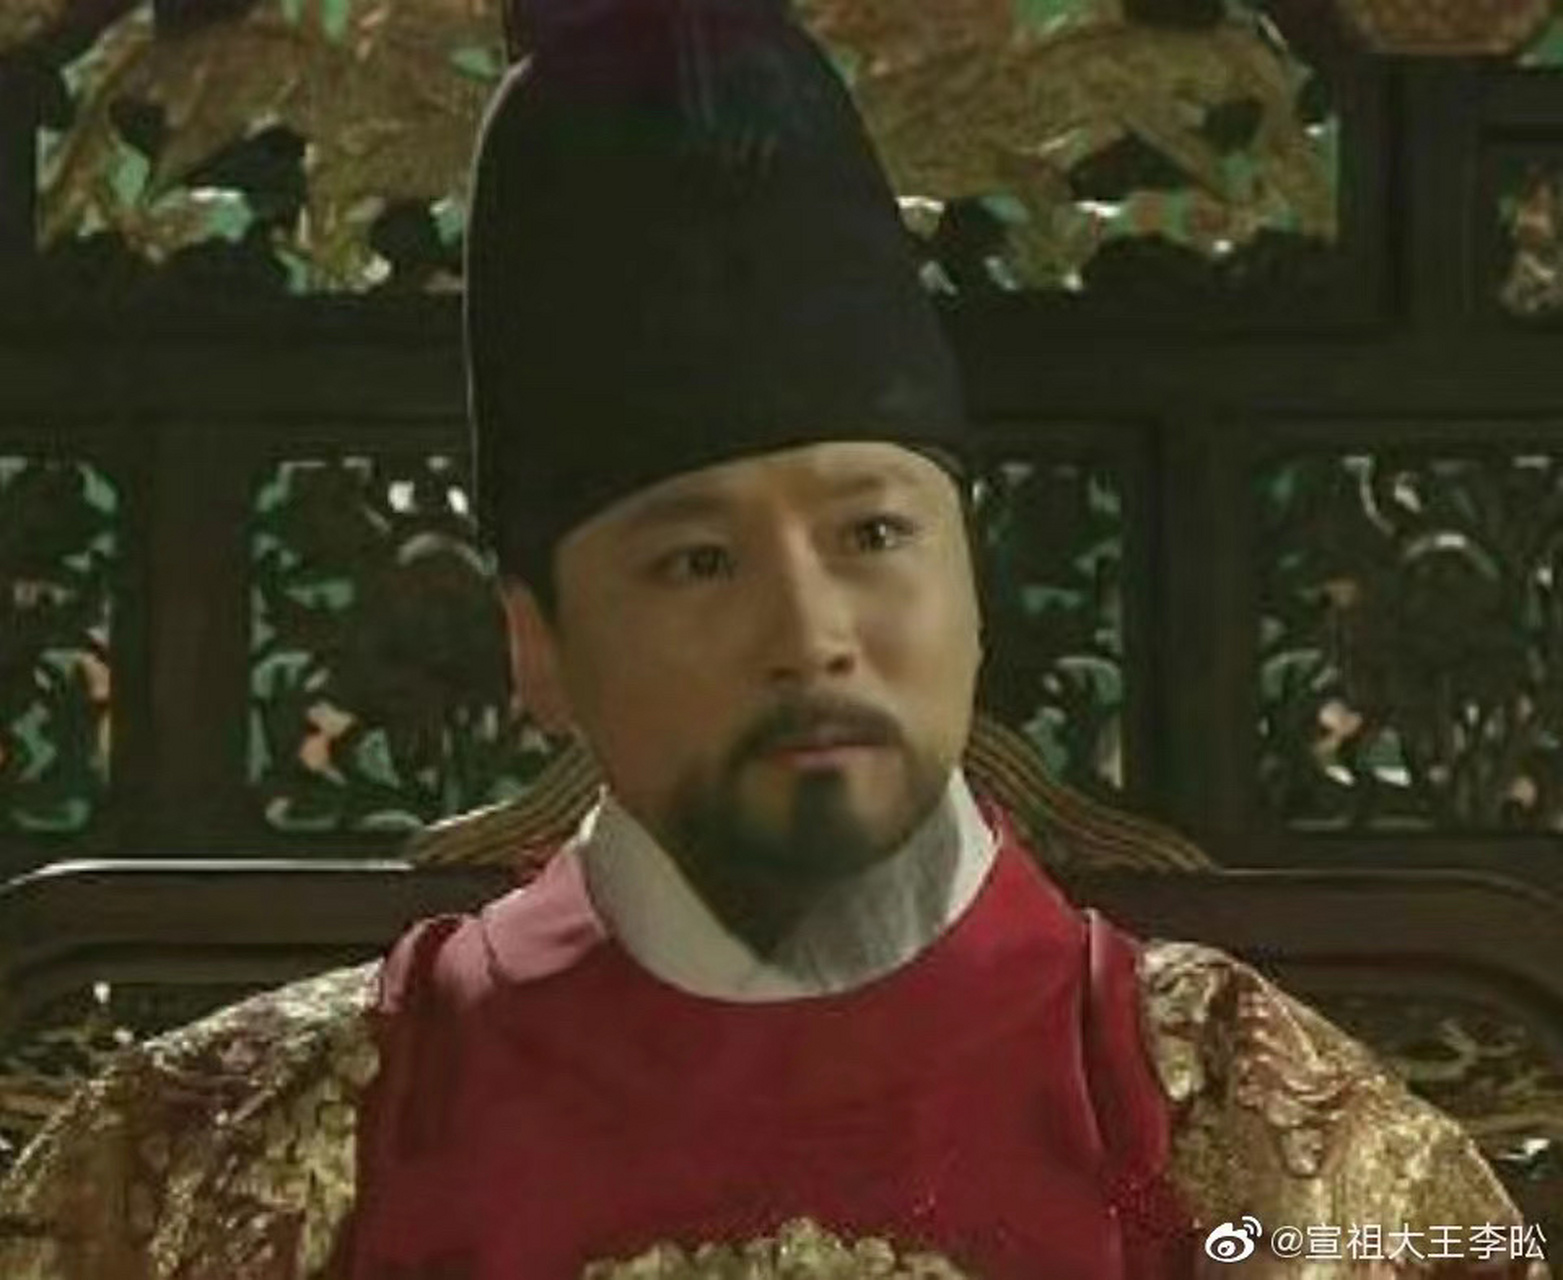 朝鲜明宗(朝鲜语: /朝鮮 明宗 joseon myeongjong;1534年